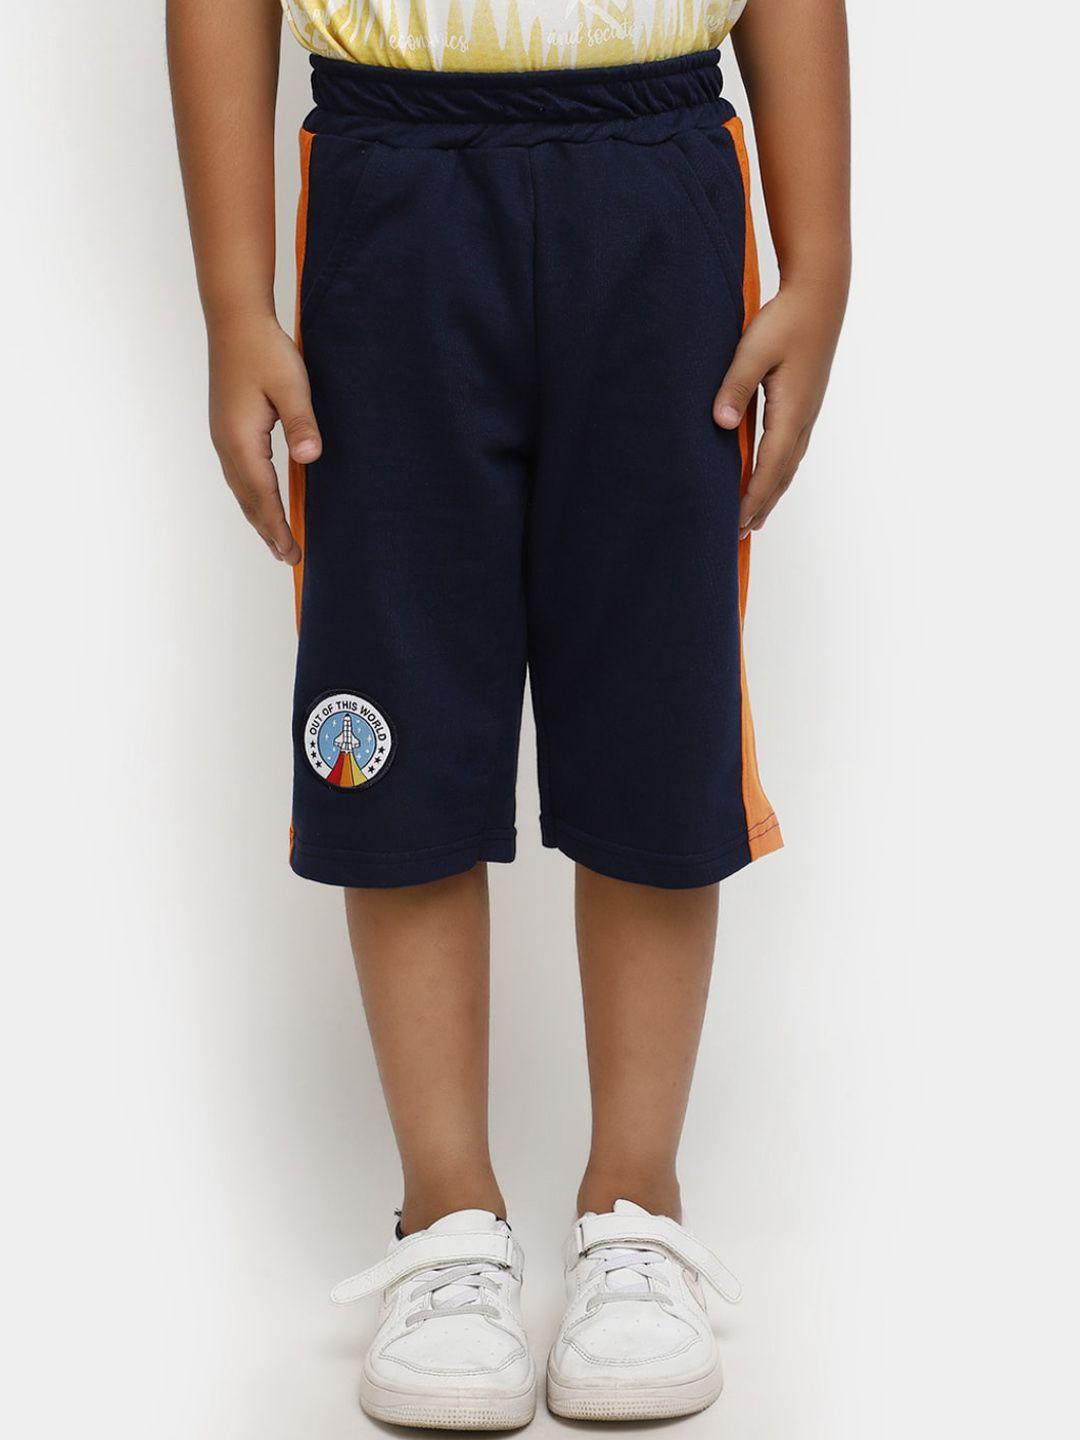 v-mart-boys-mid-rise-cotton-shorts